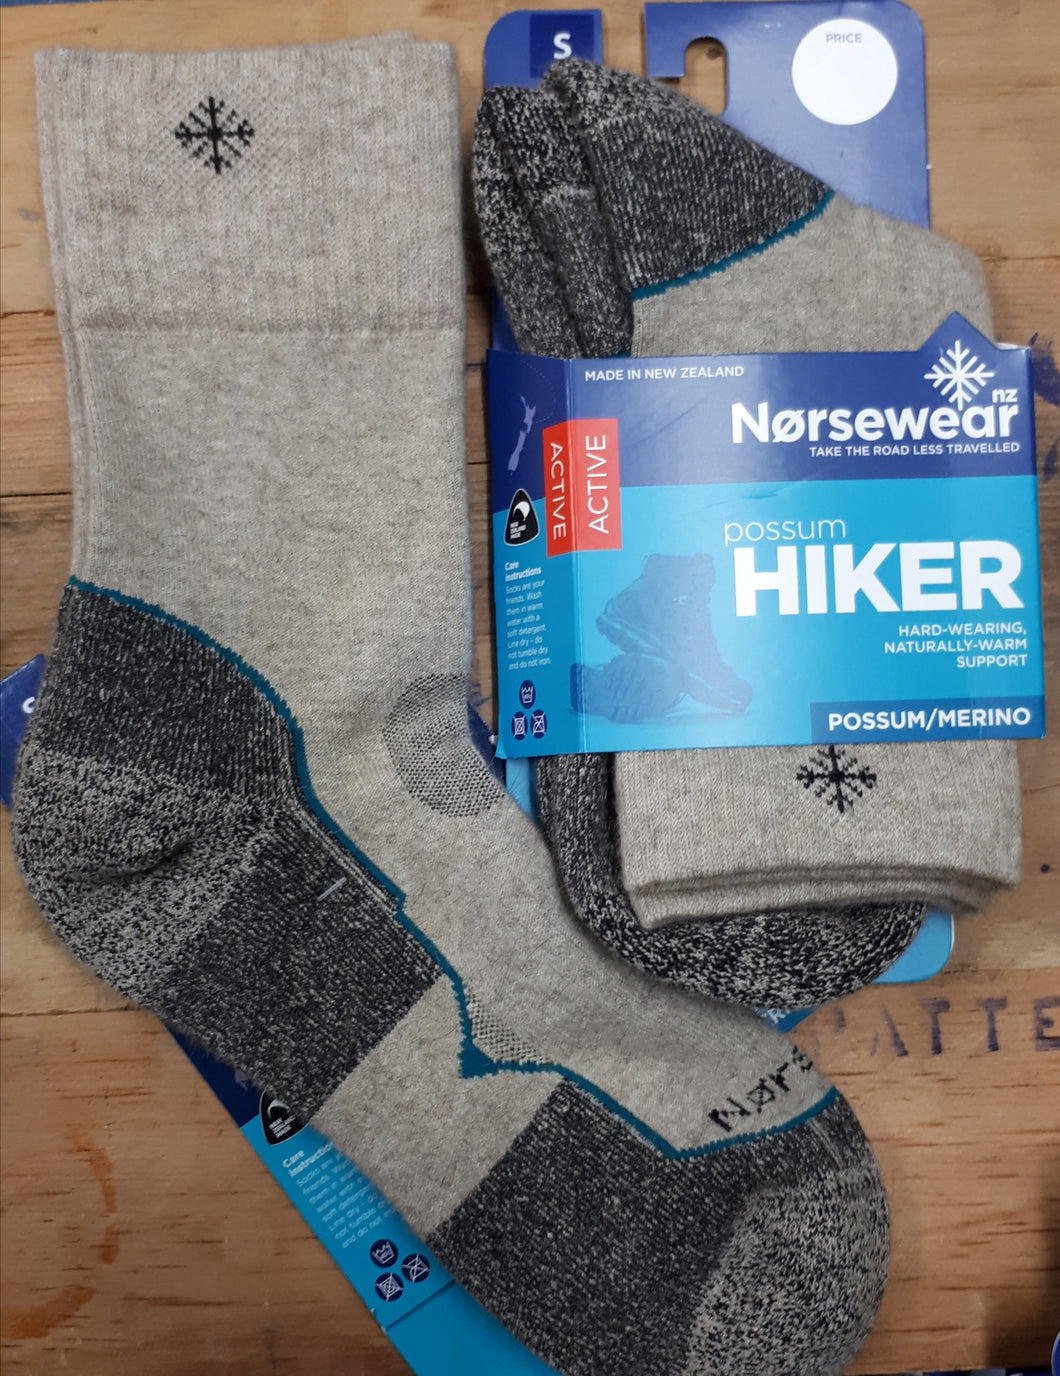 Norsewear Possum/Merino Hiker Socks